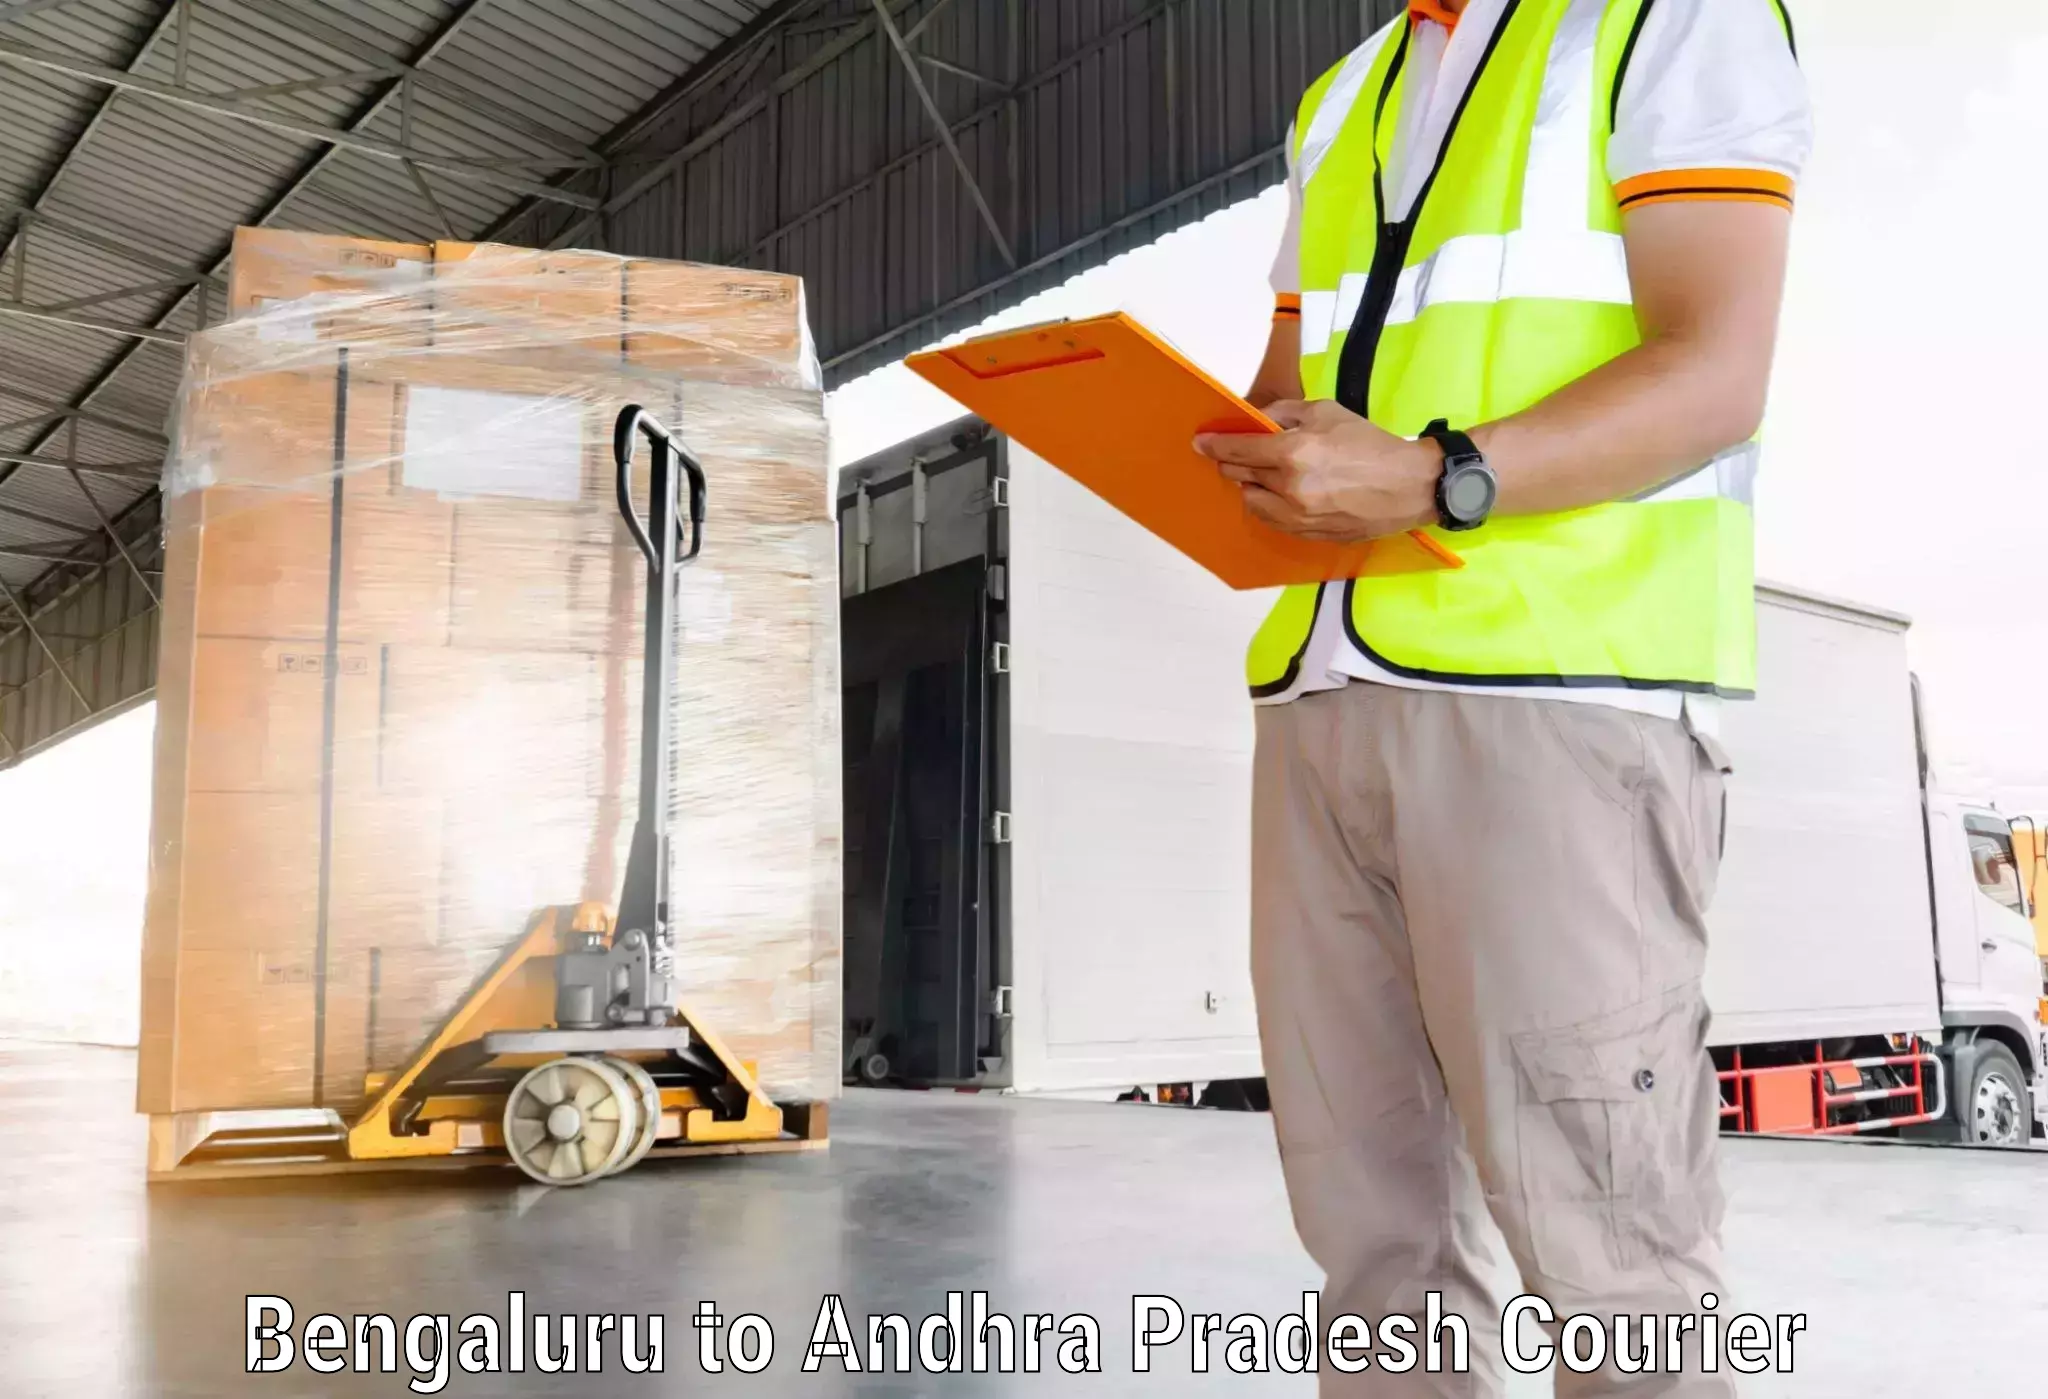 Full-service courier options Bengaluru to Rampachodavaram